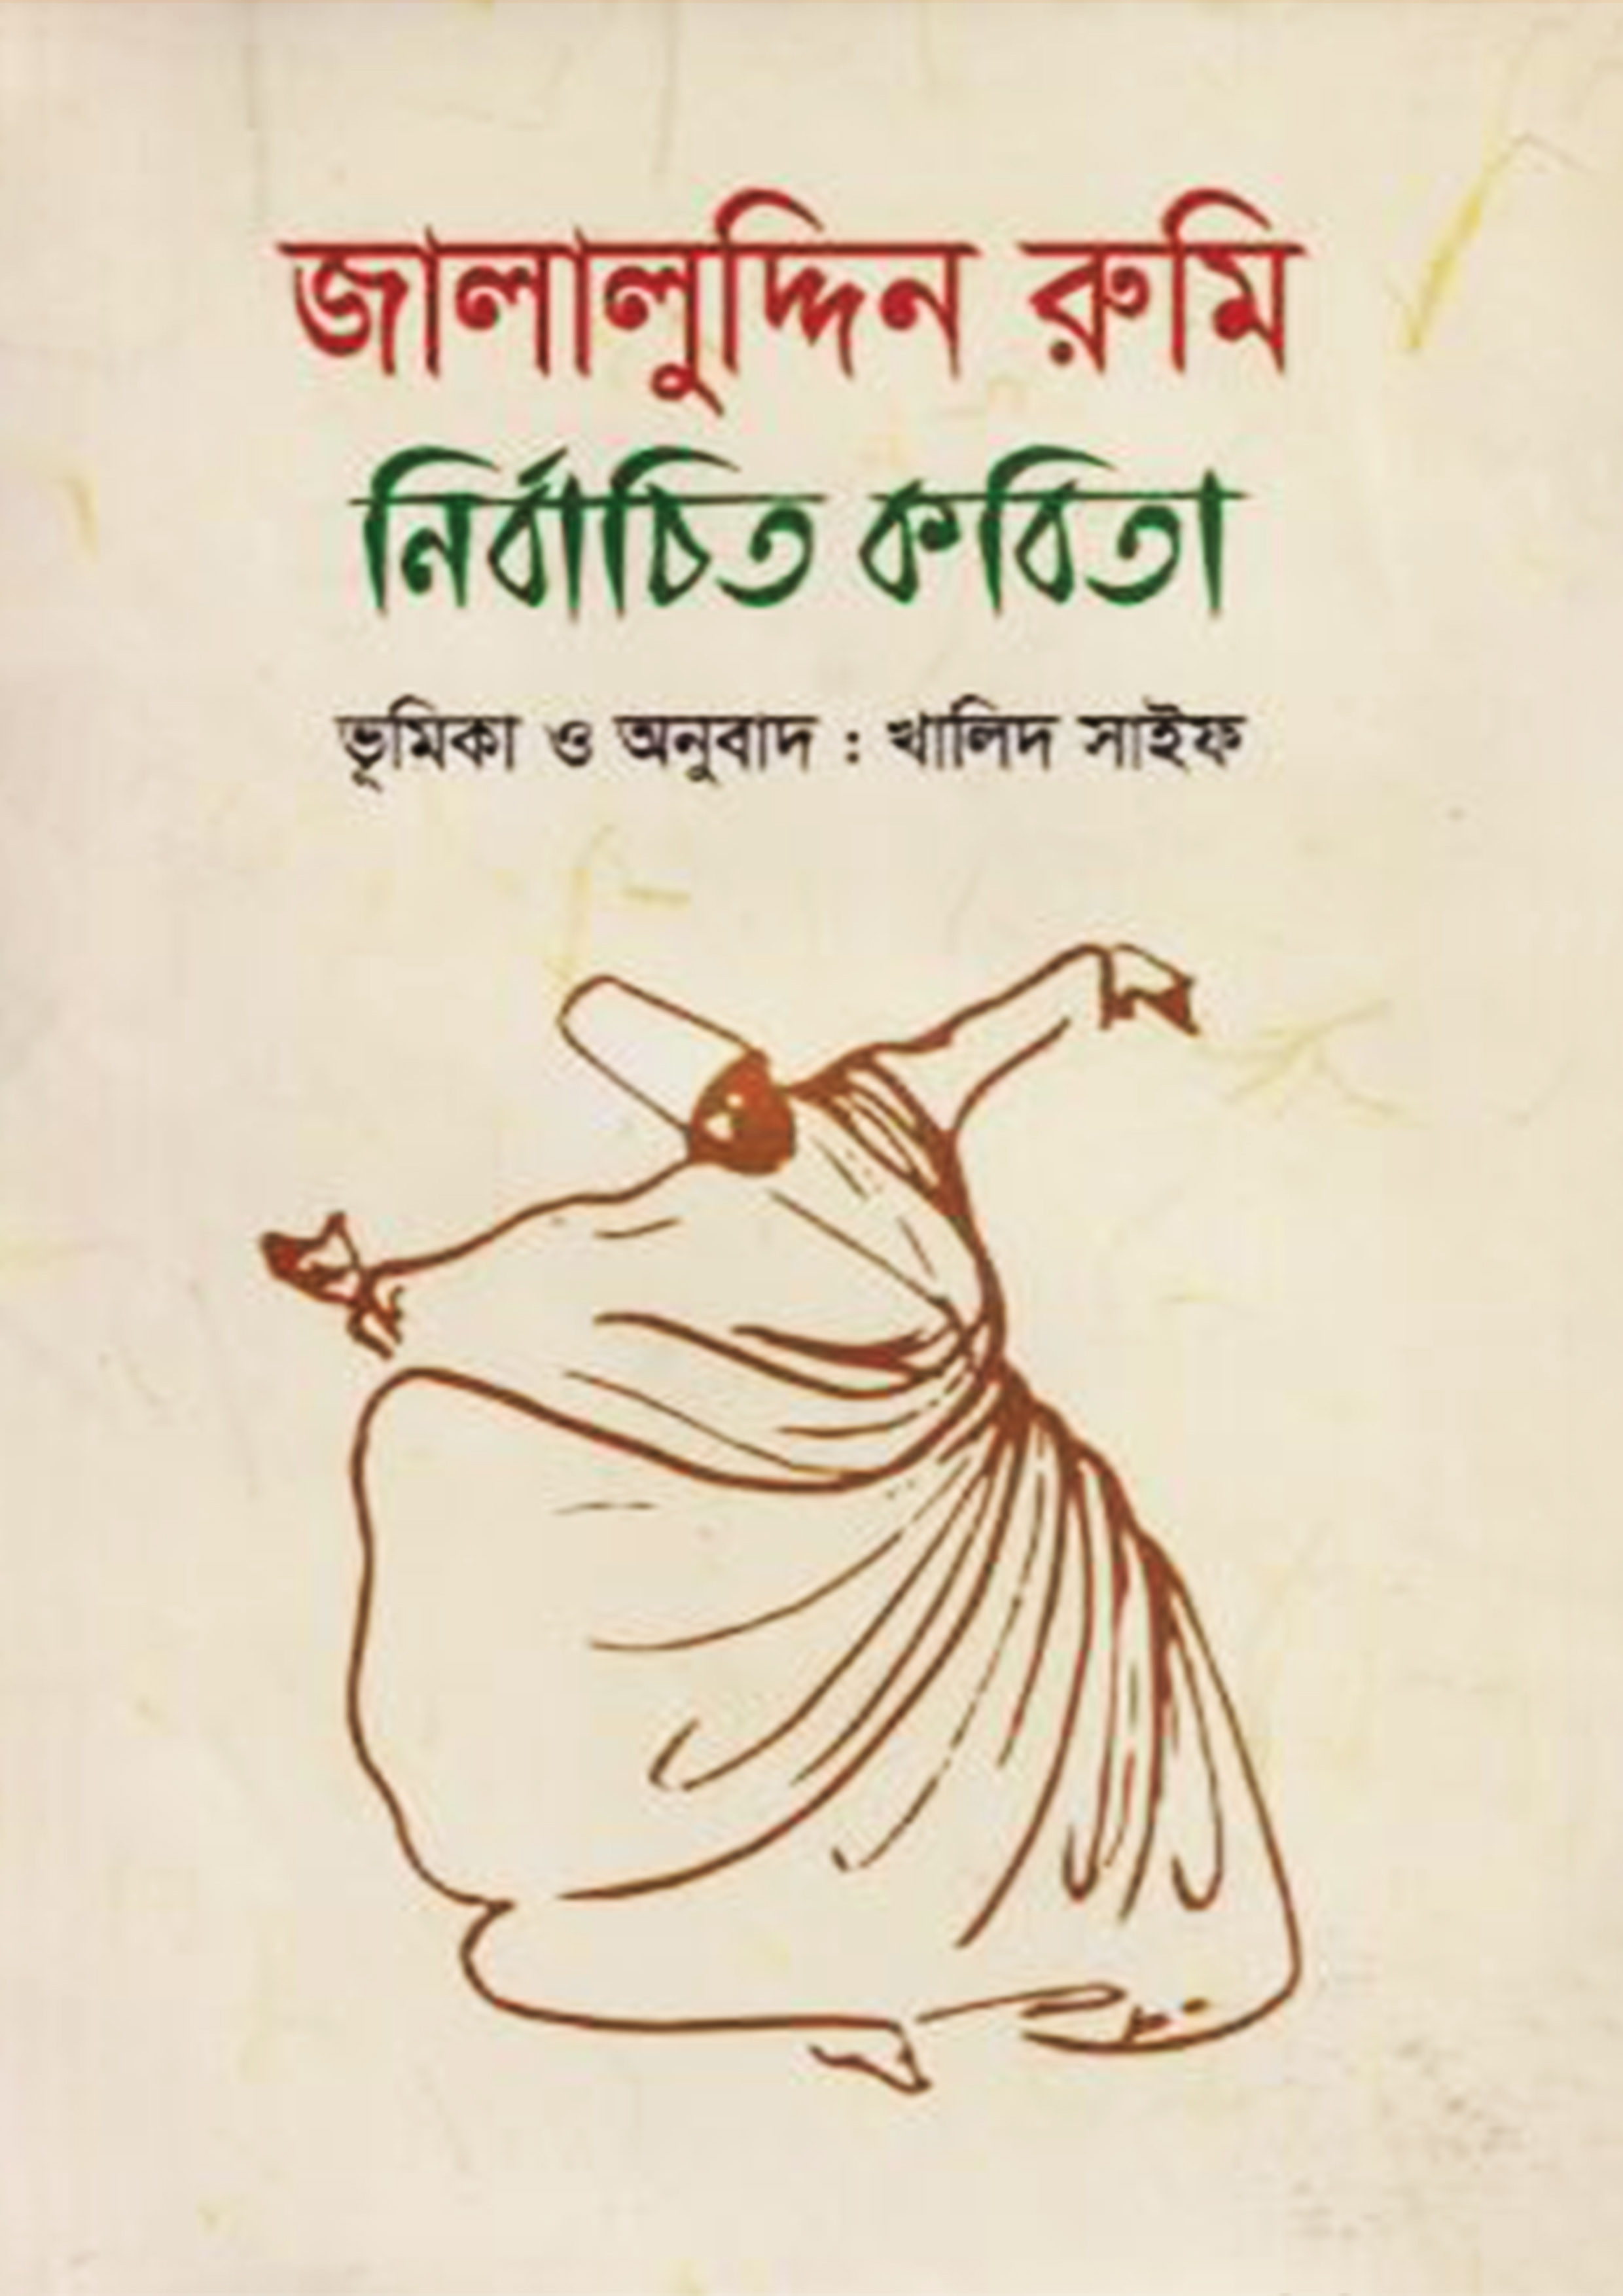 জালালুদ্দিন রুমি নির্বাচিত কবিতা (হার্ডকভার)